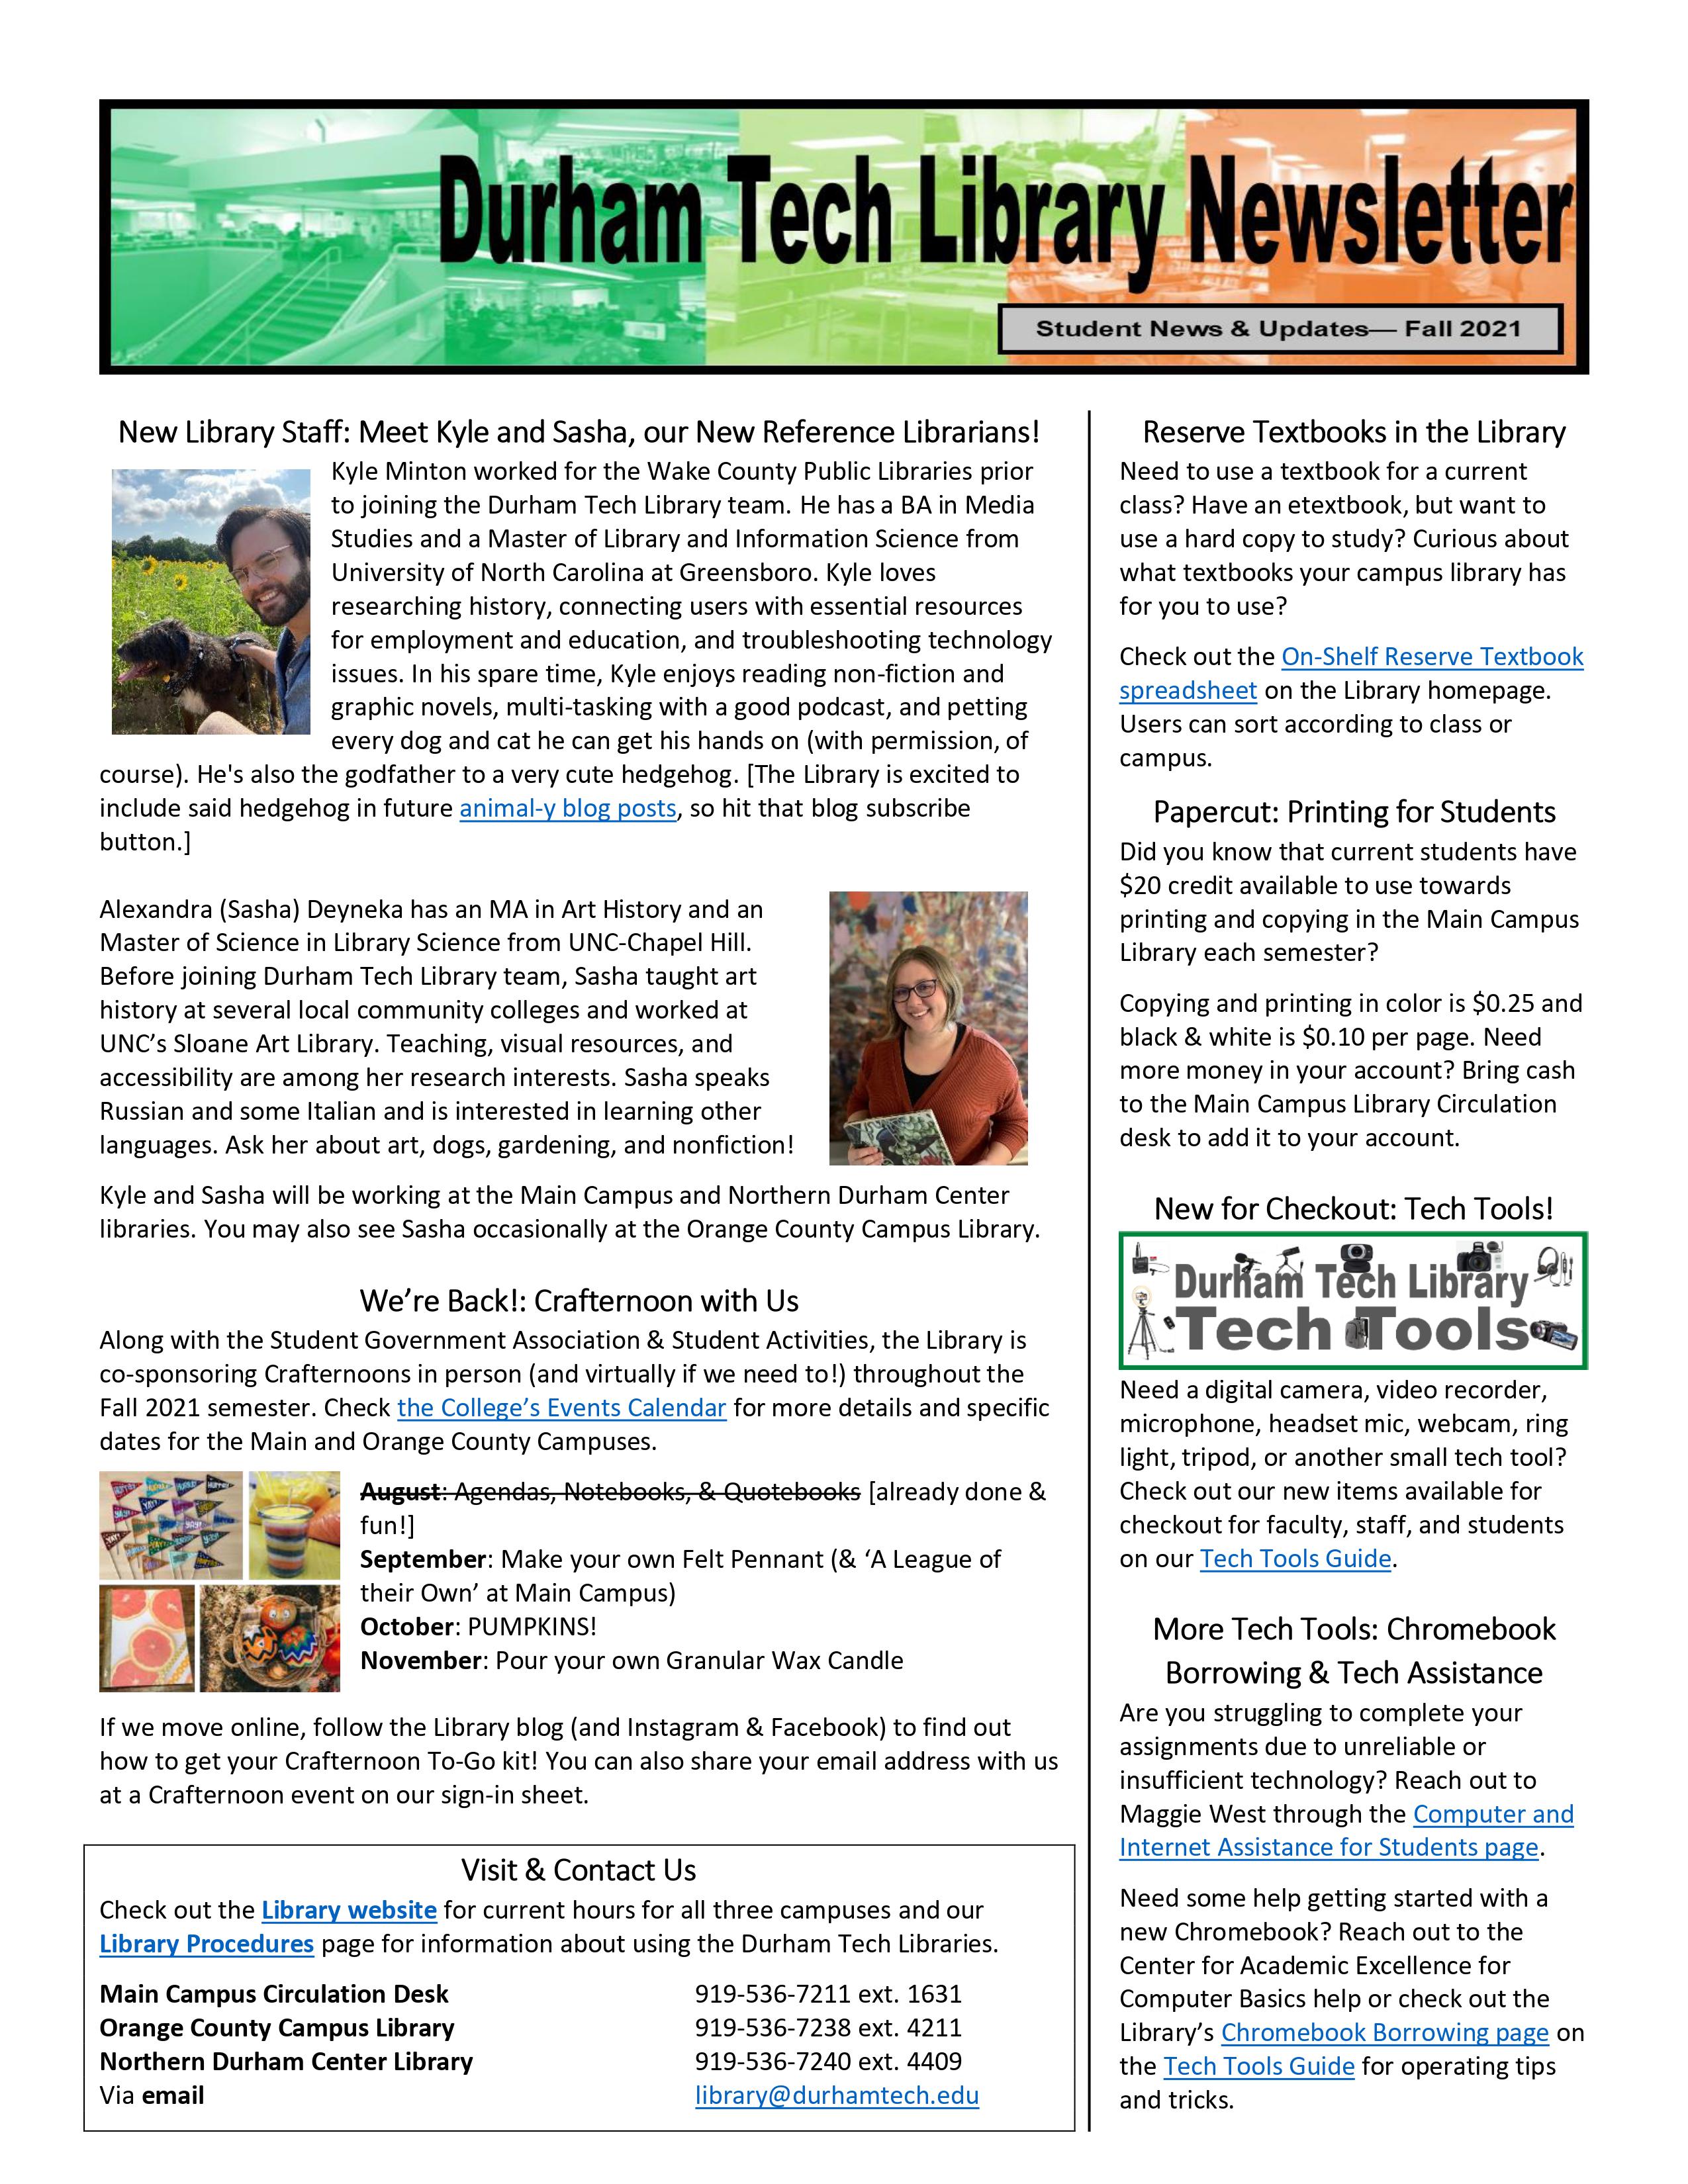 Durham Tech Library Newsletter- Student News & Updates, Fall 2021